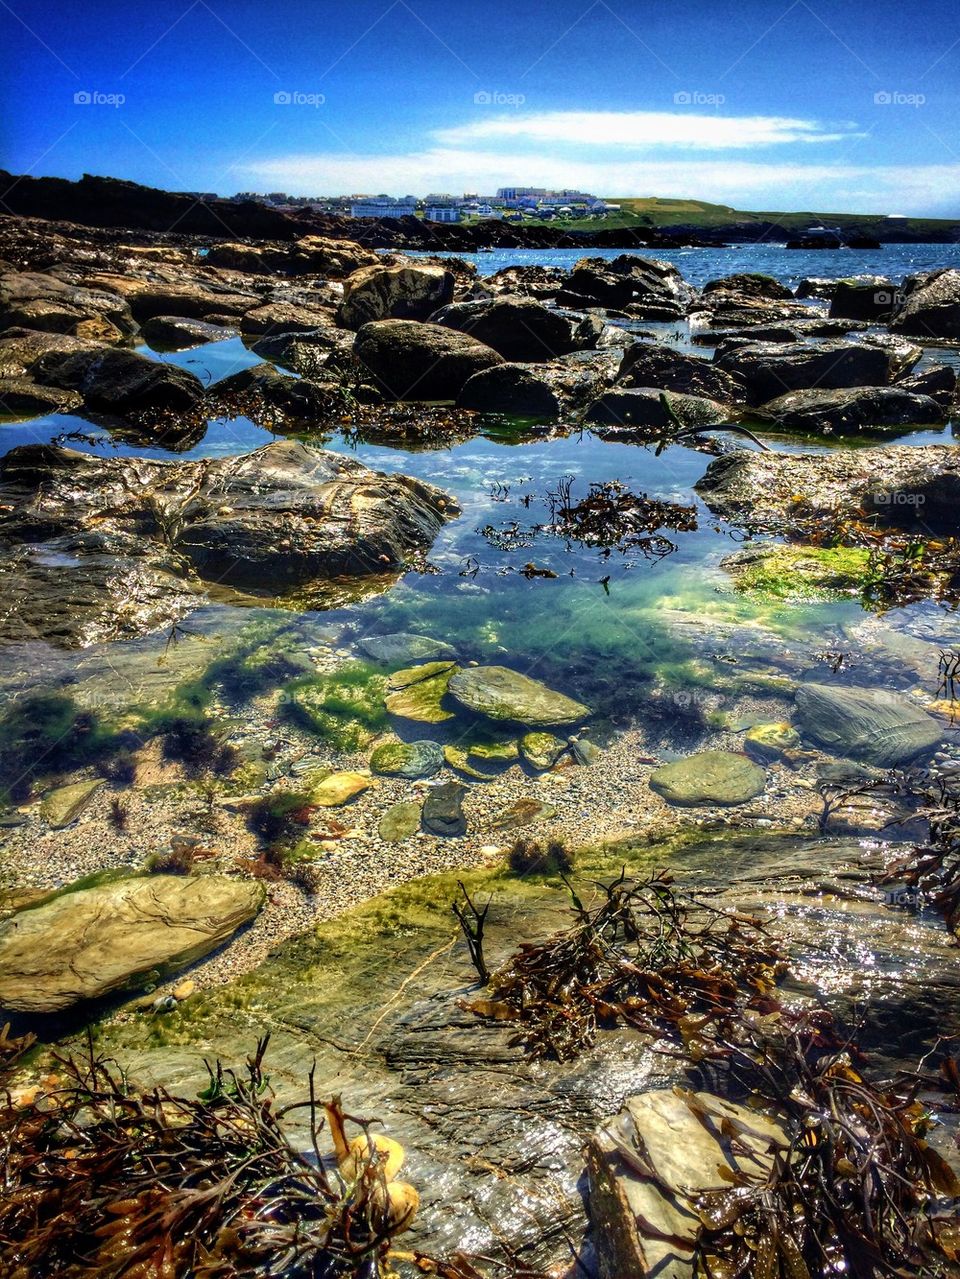 Kelp and rock near the coast